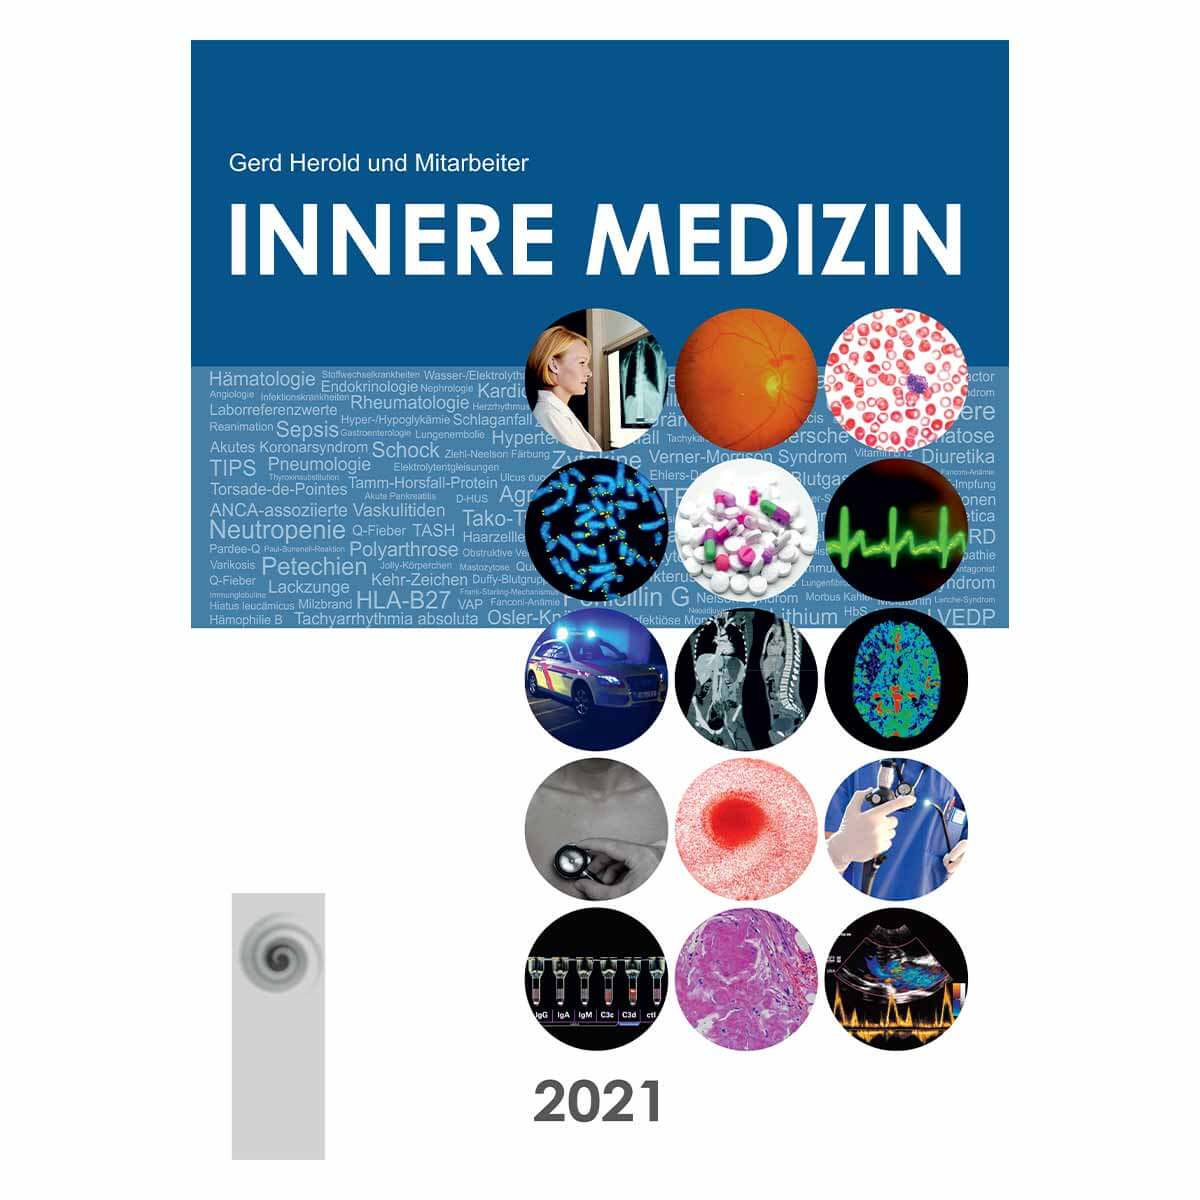 Innere Medizin 2021 – Eine vorlesungsorientierte Darstellung (eBook im